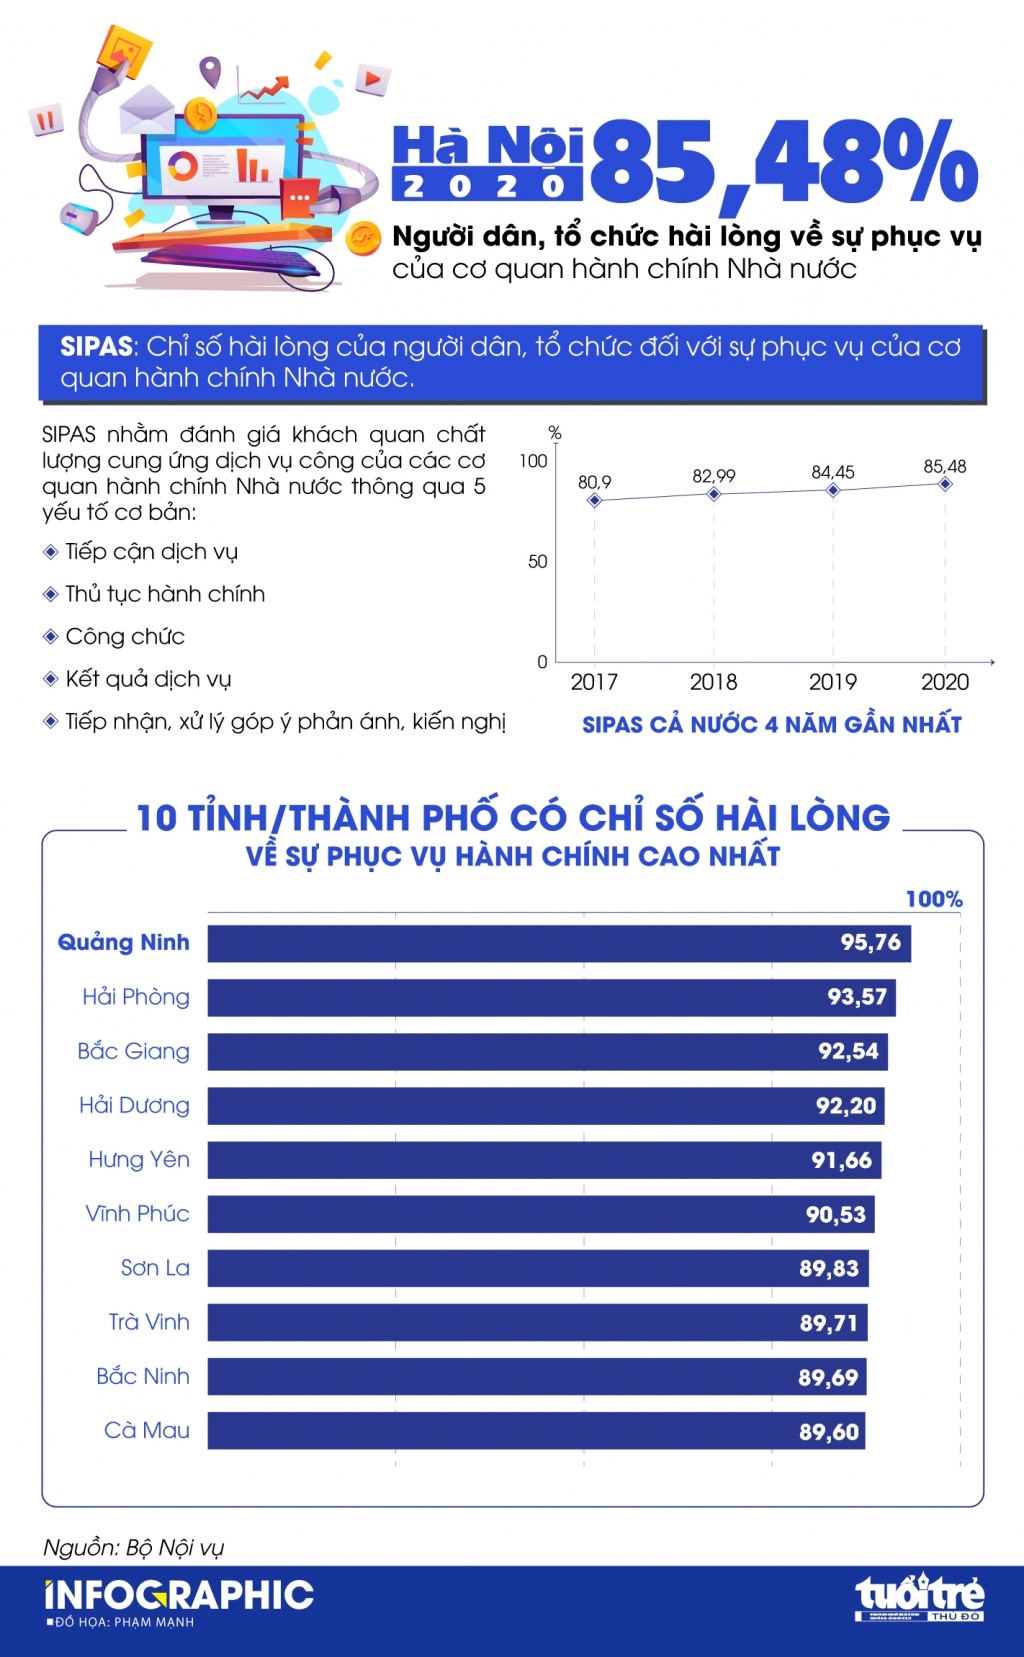 Hà Nội: 85,48% người dân, tổ chức hài lòng về sự phục vụ của cơ quan hành chính Nhà nước